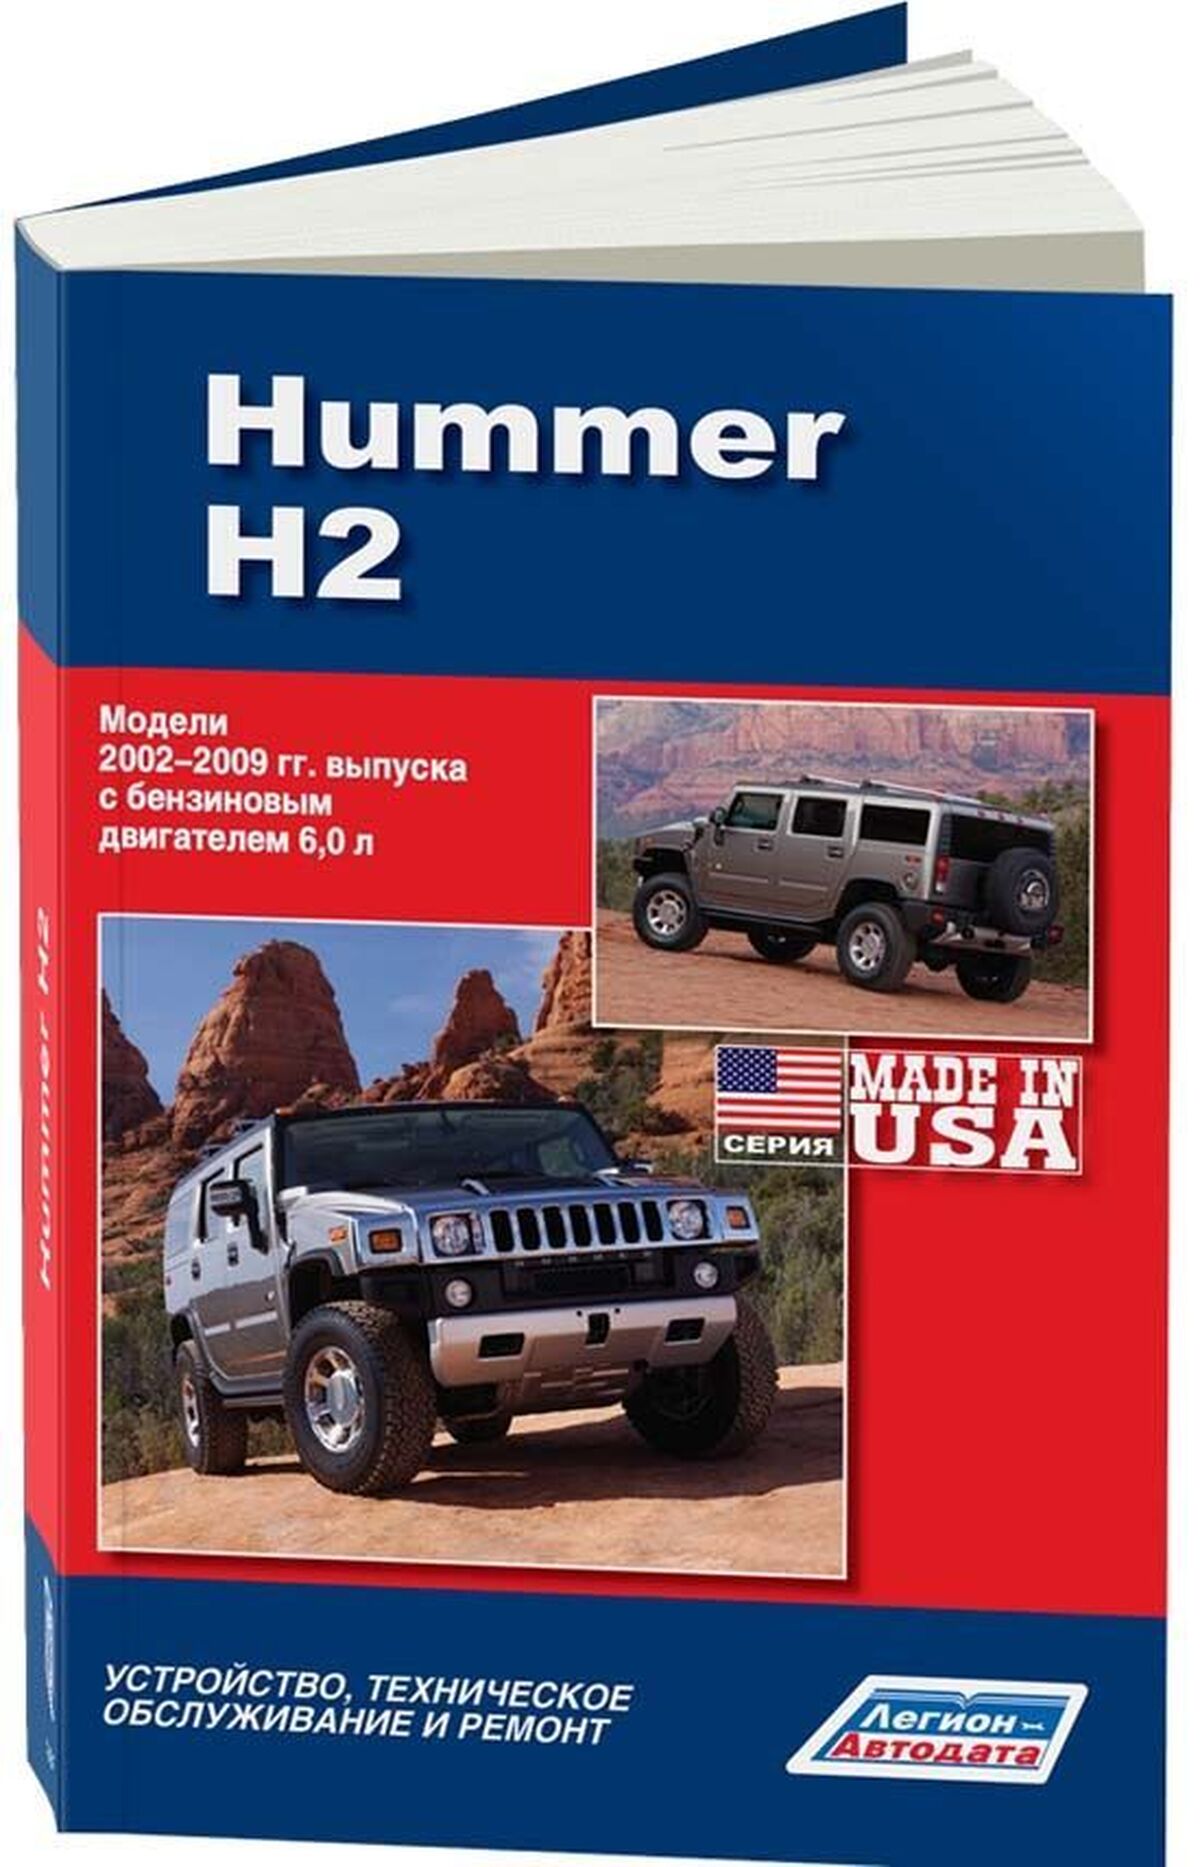 Книга: HUMMER H2 (б) 2002-2009 г.в., рем., экспл., то | Легион-Aвтодата